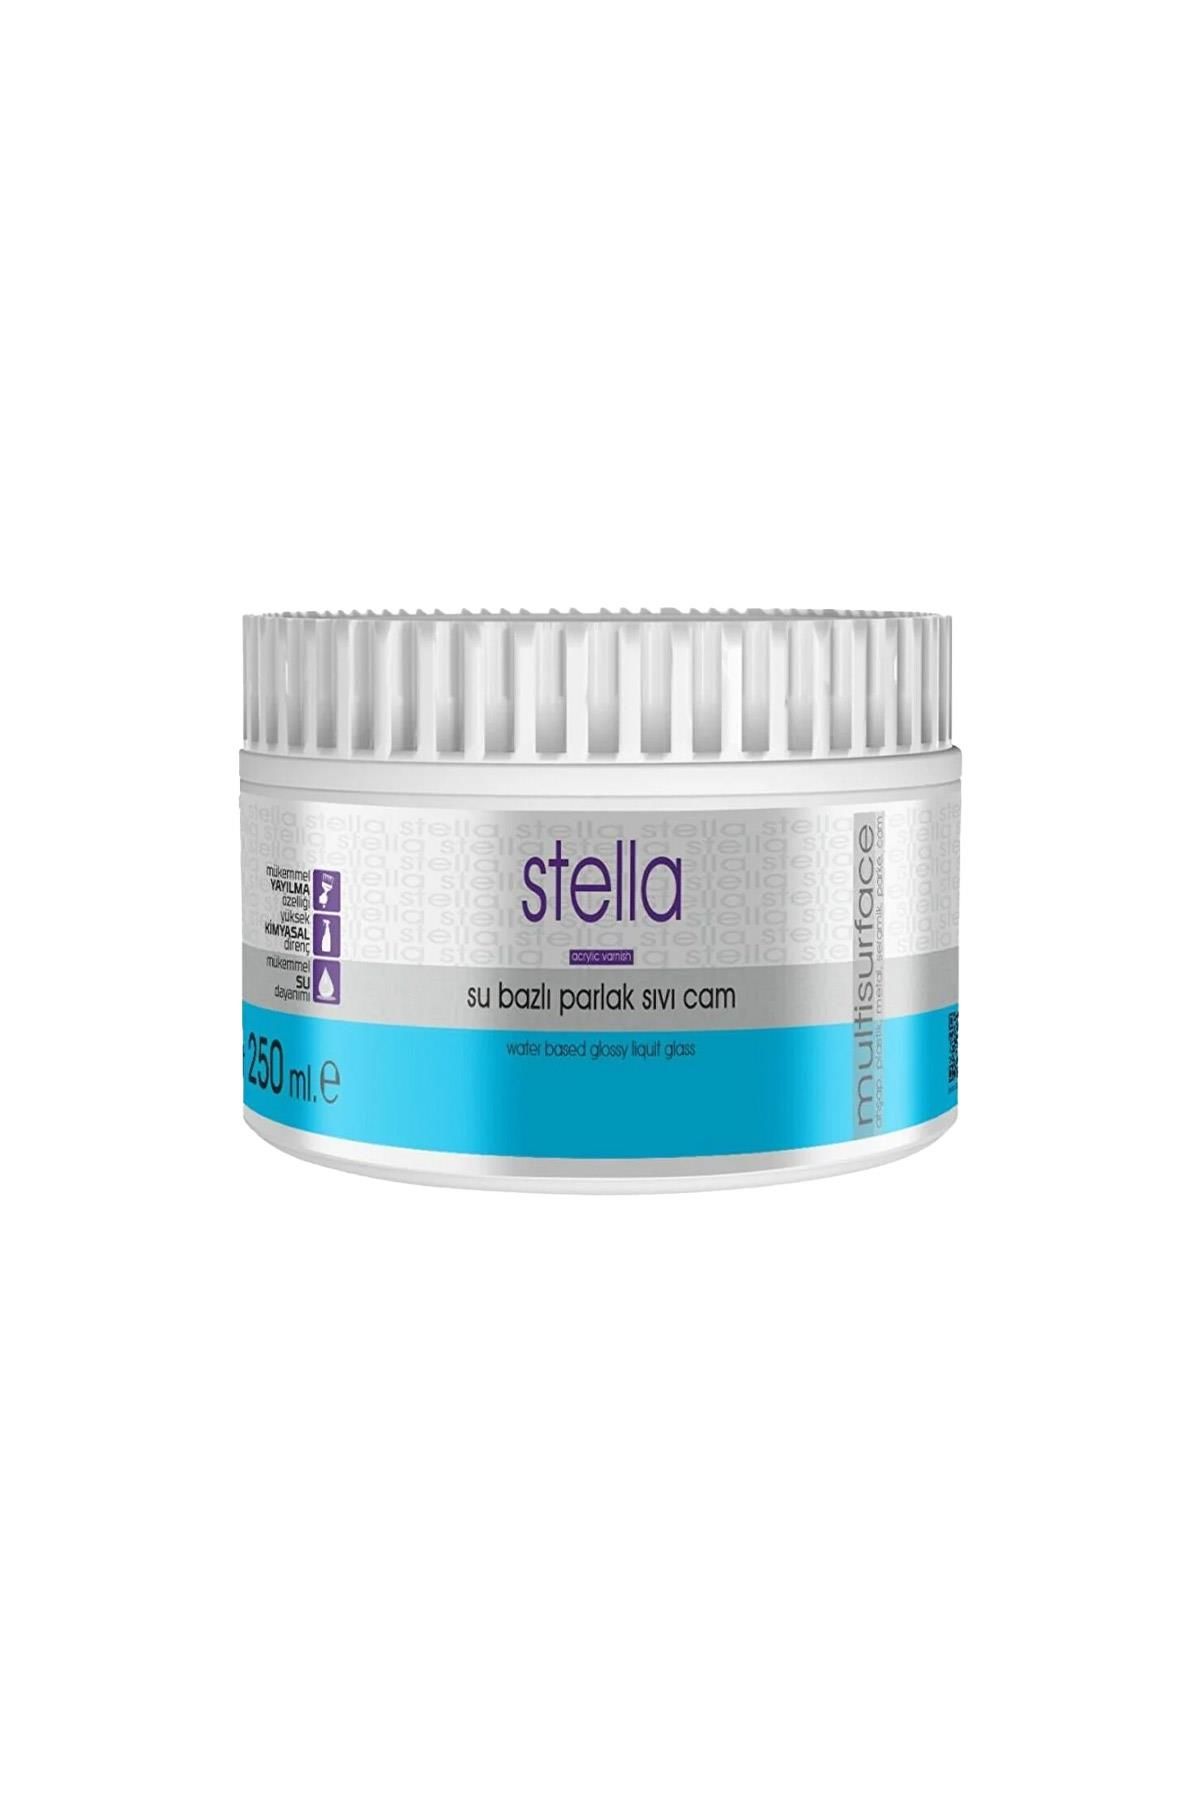 Stella Su Bazlı Parlak Sıvı Cam 250 ml.